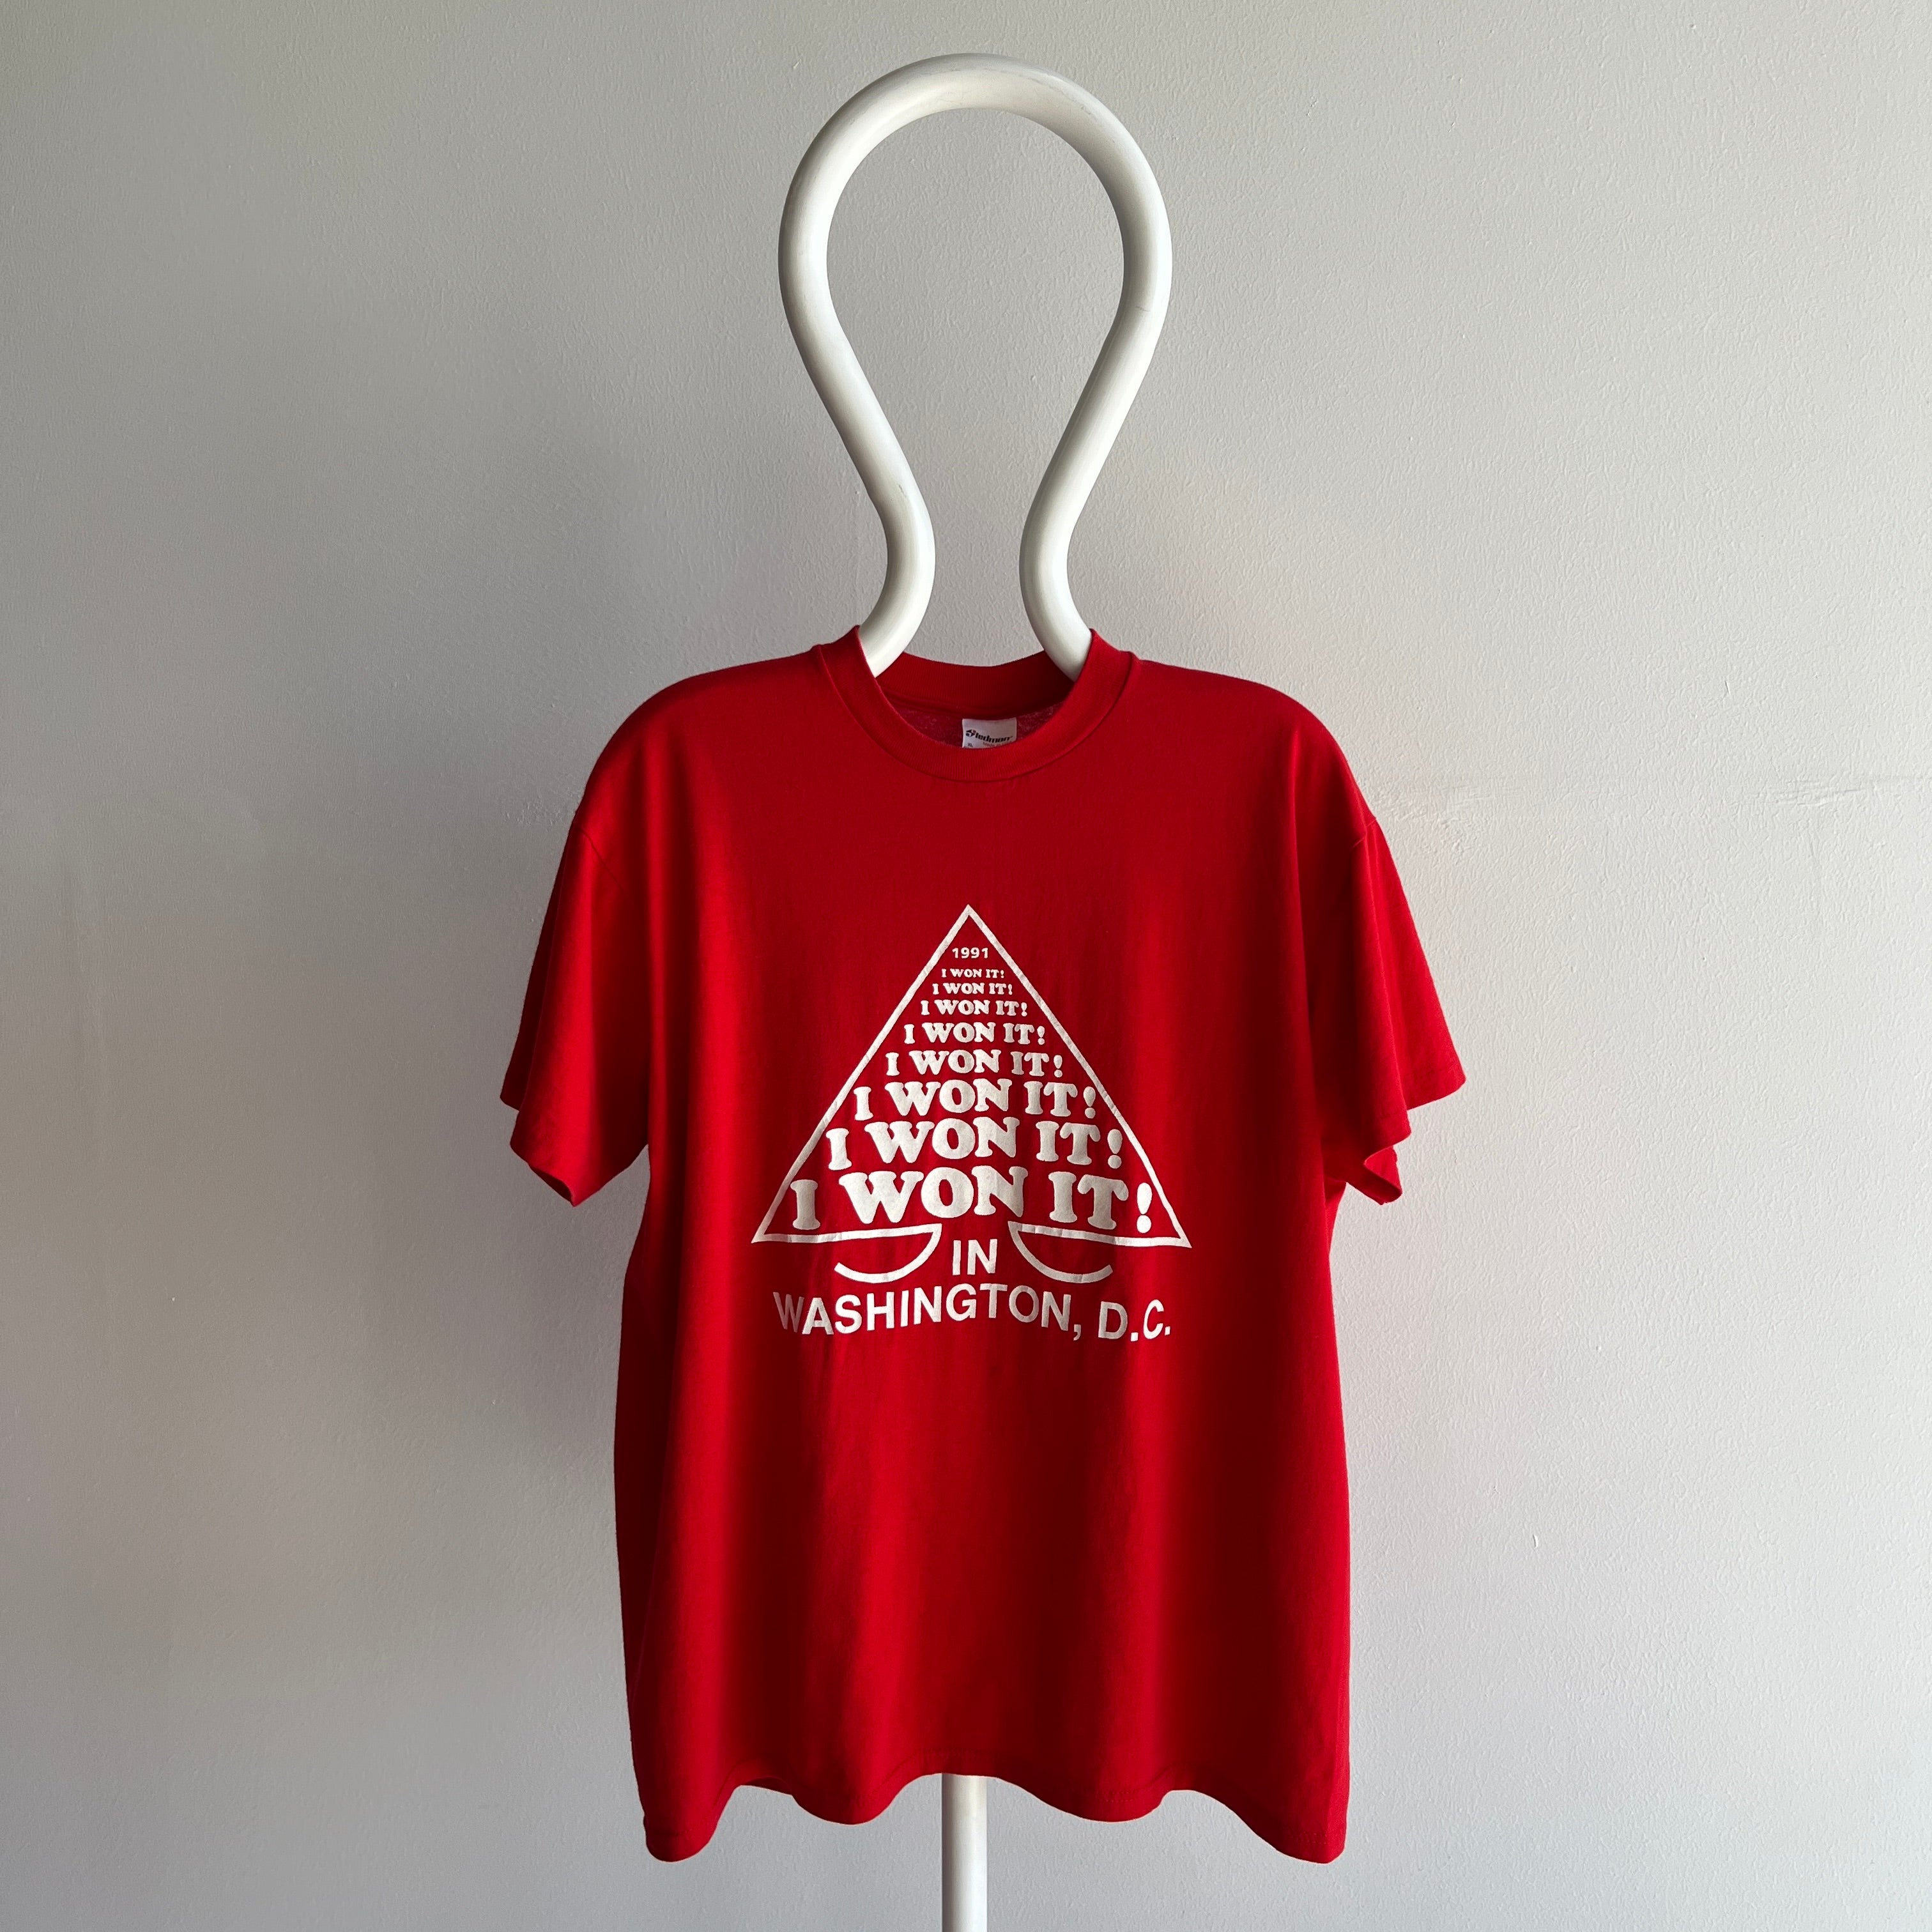 1991 I WON IT, Washington DC T-Shirt